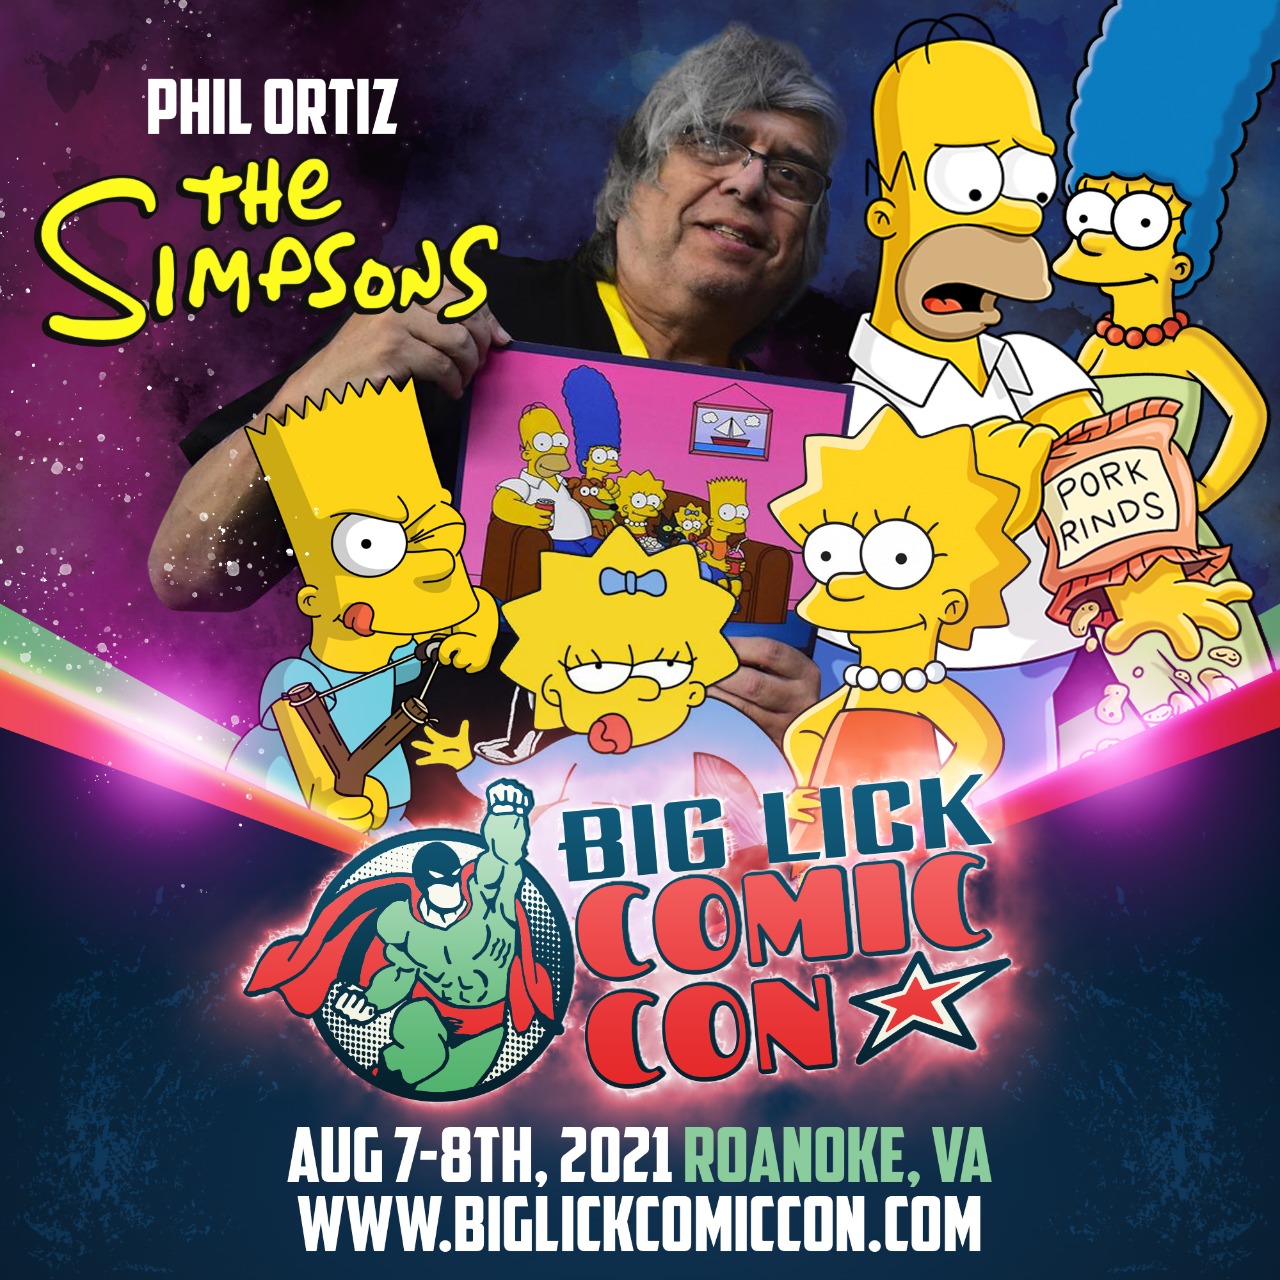 Big Lick Comic Con Phil Ortiz! The Big Lick ComicCon